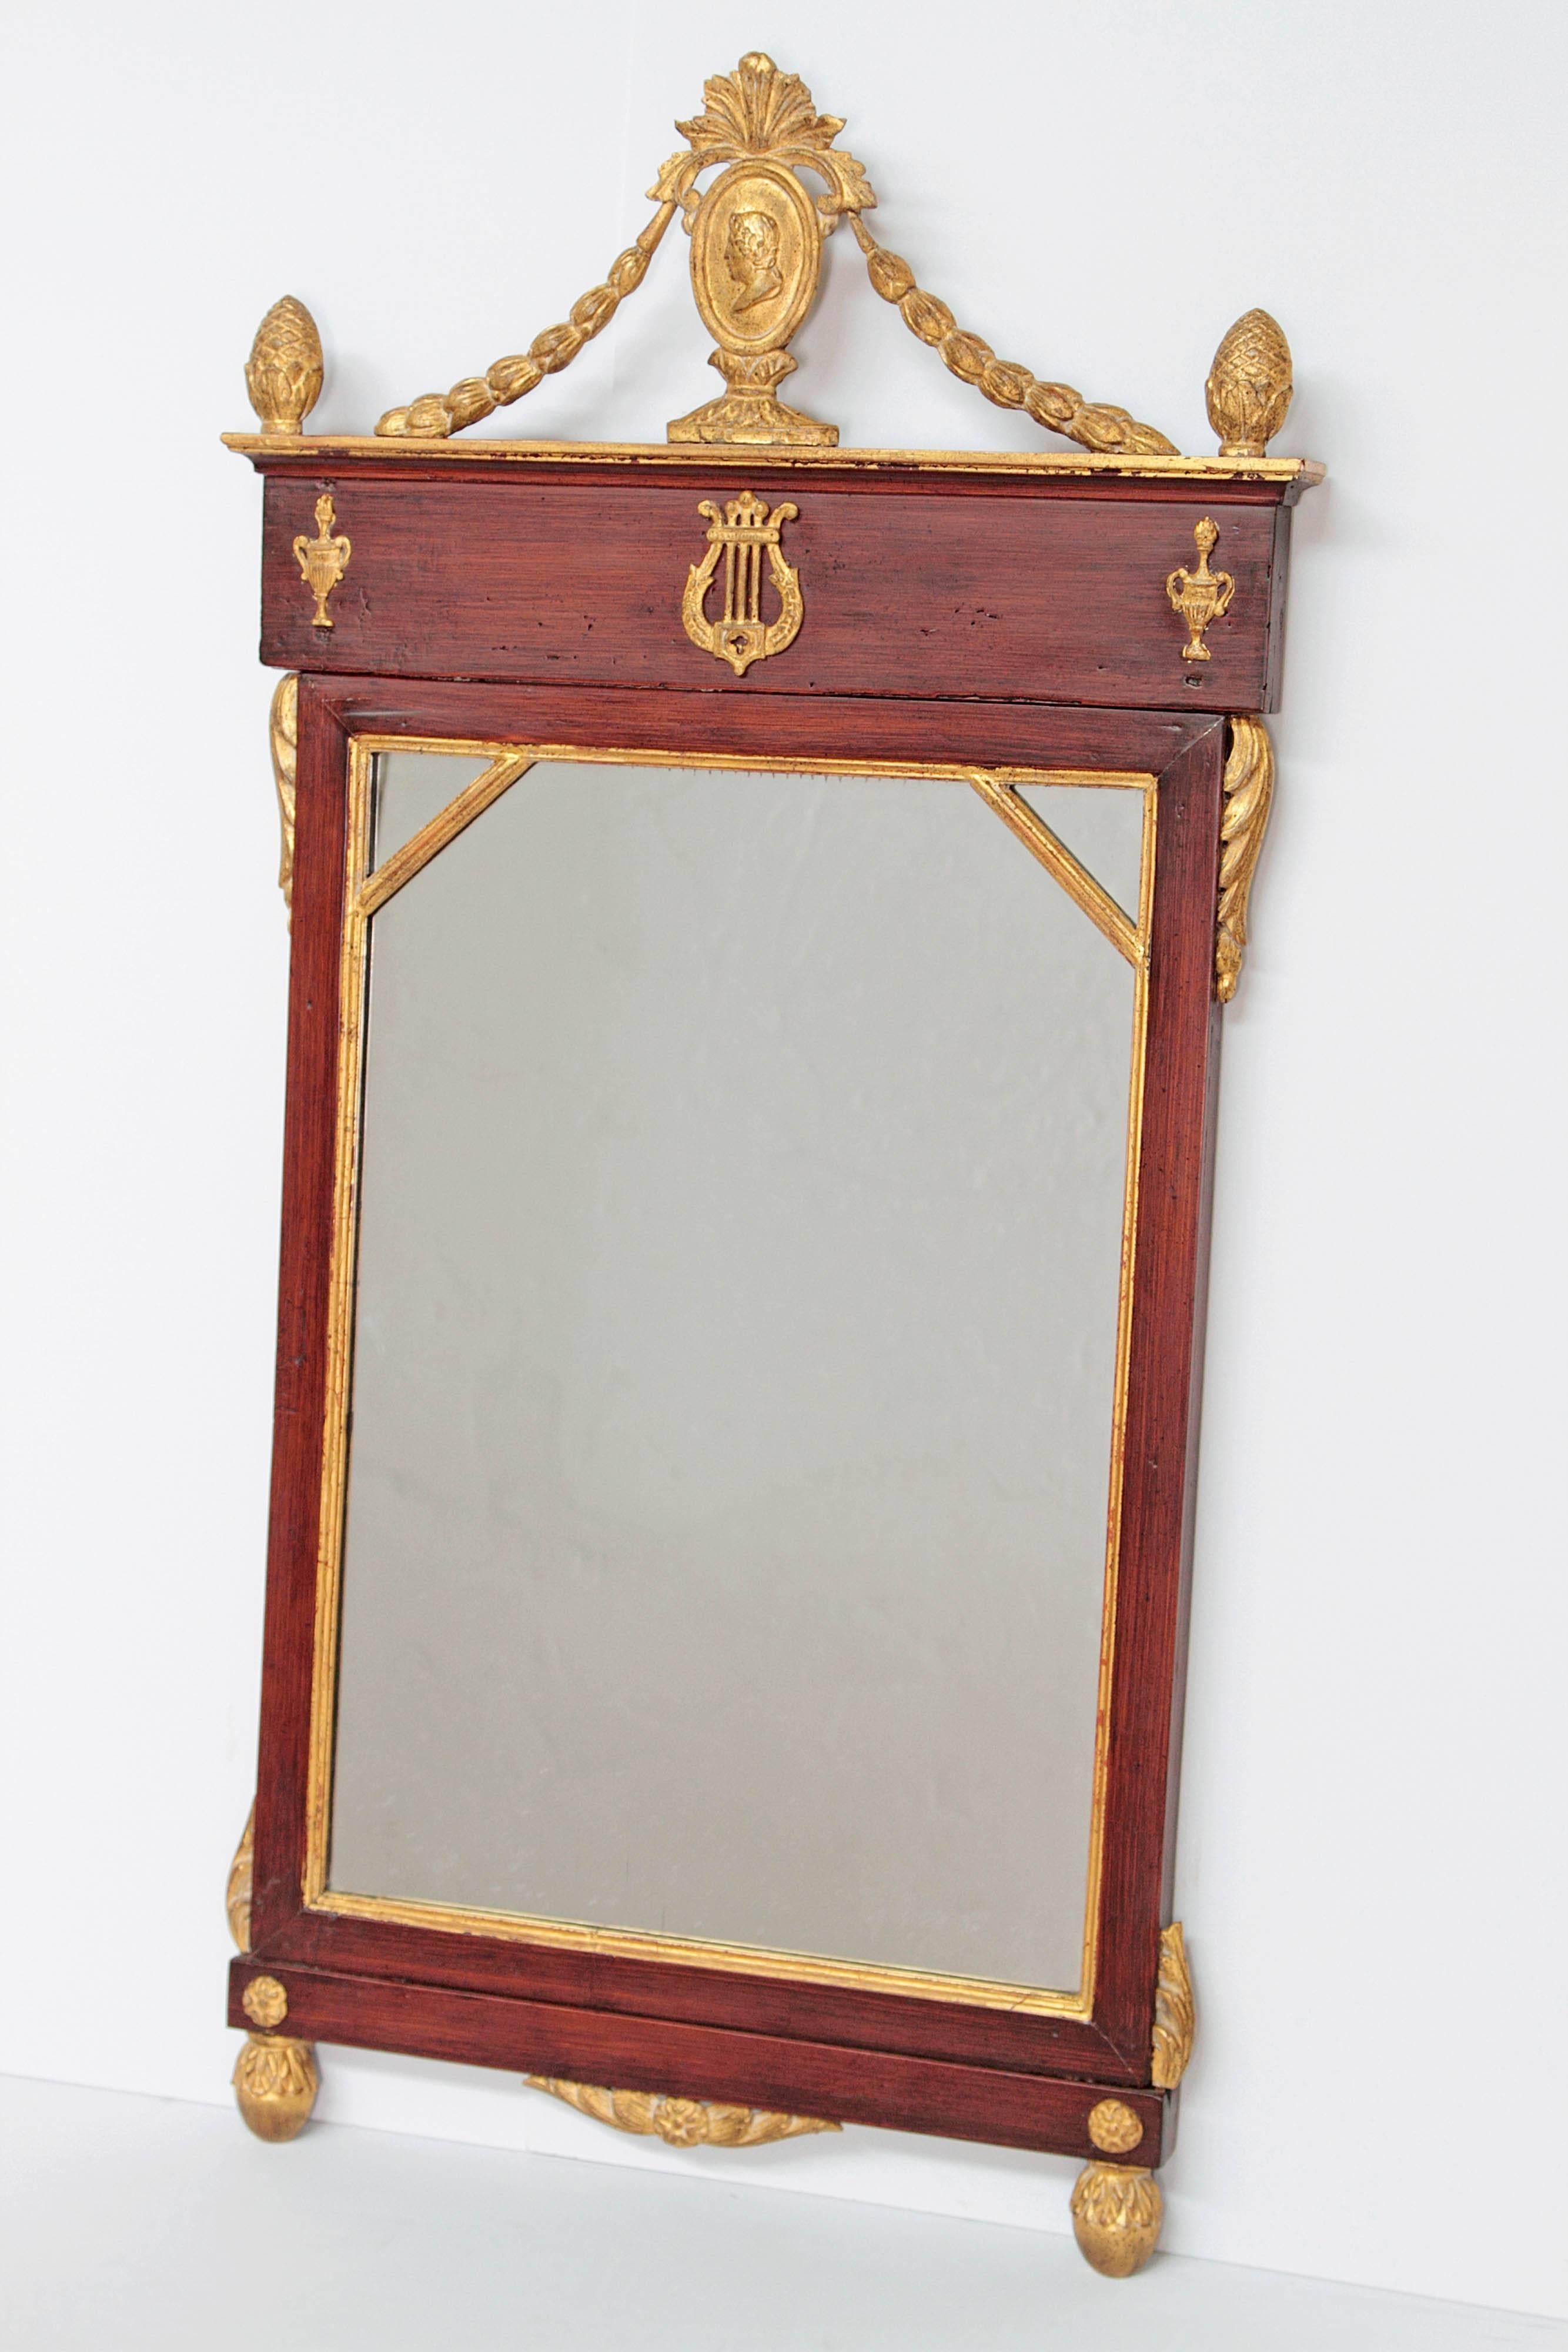 Miroir néoclassique en acajou et bois doré. Portrait d'un personnage classique dans un ovale en haut avec des guirlandes dans le cadre. Urnes appliquées sur les côtés et lyre au centre, le tout doré ainsi que le pourtour du miroir. Décorations